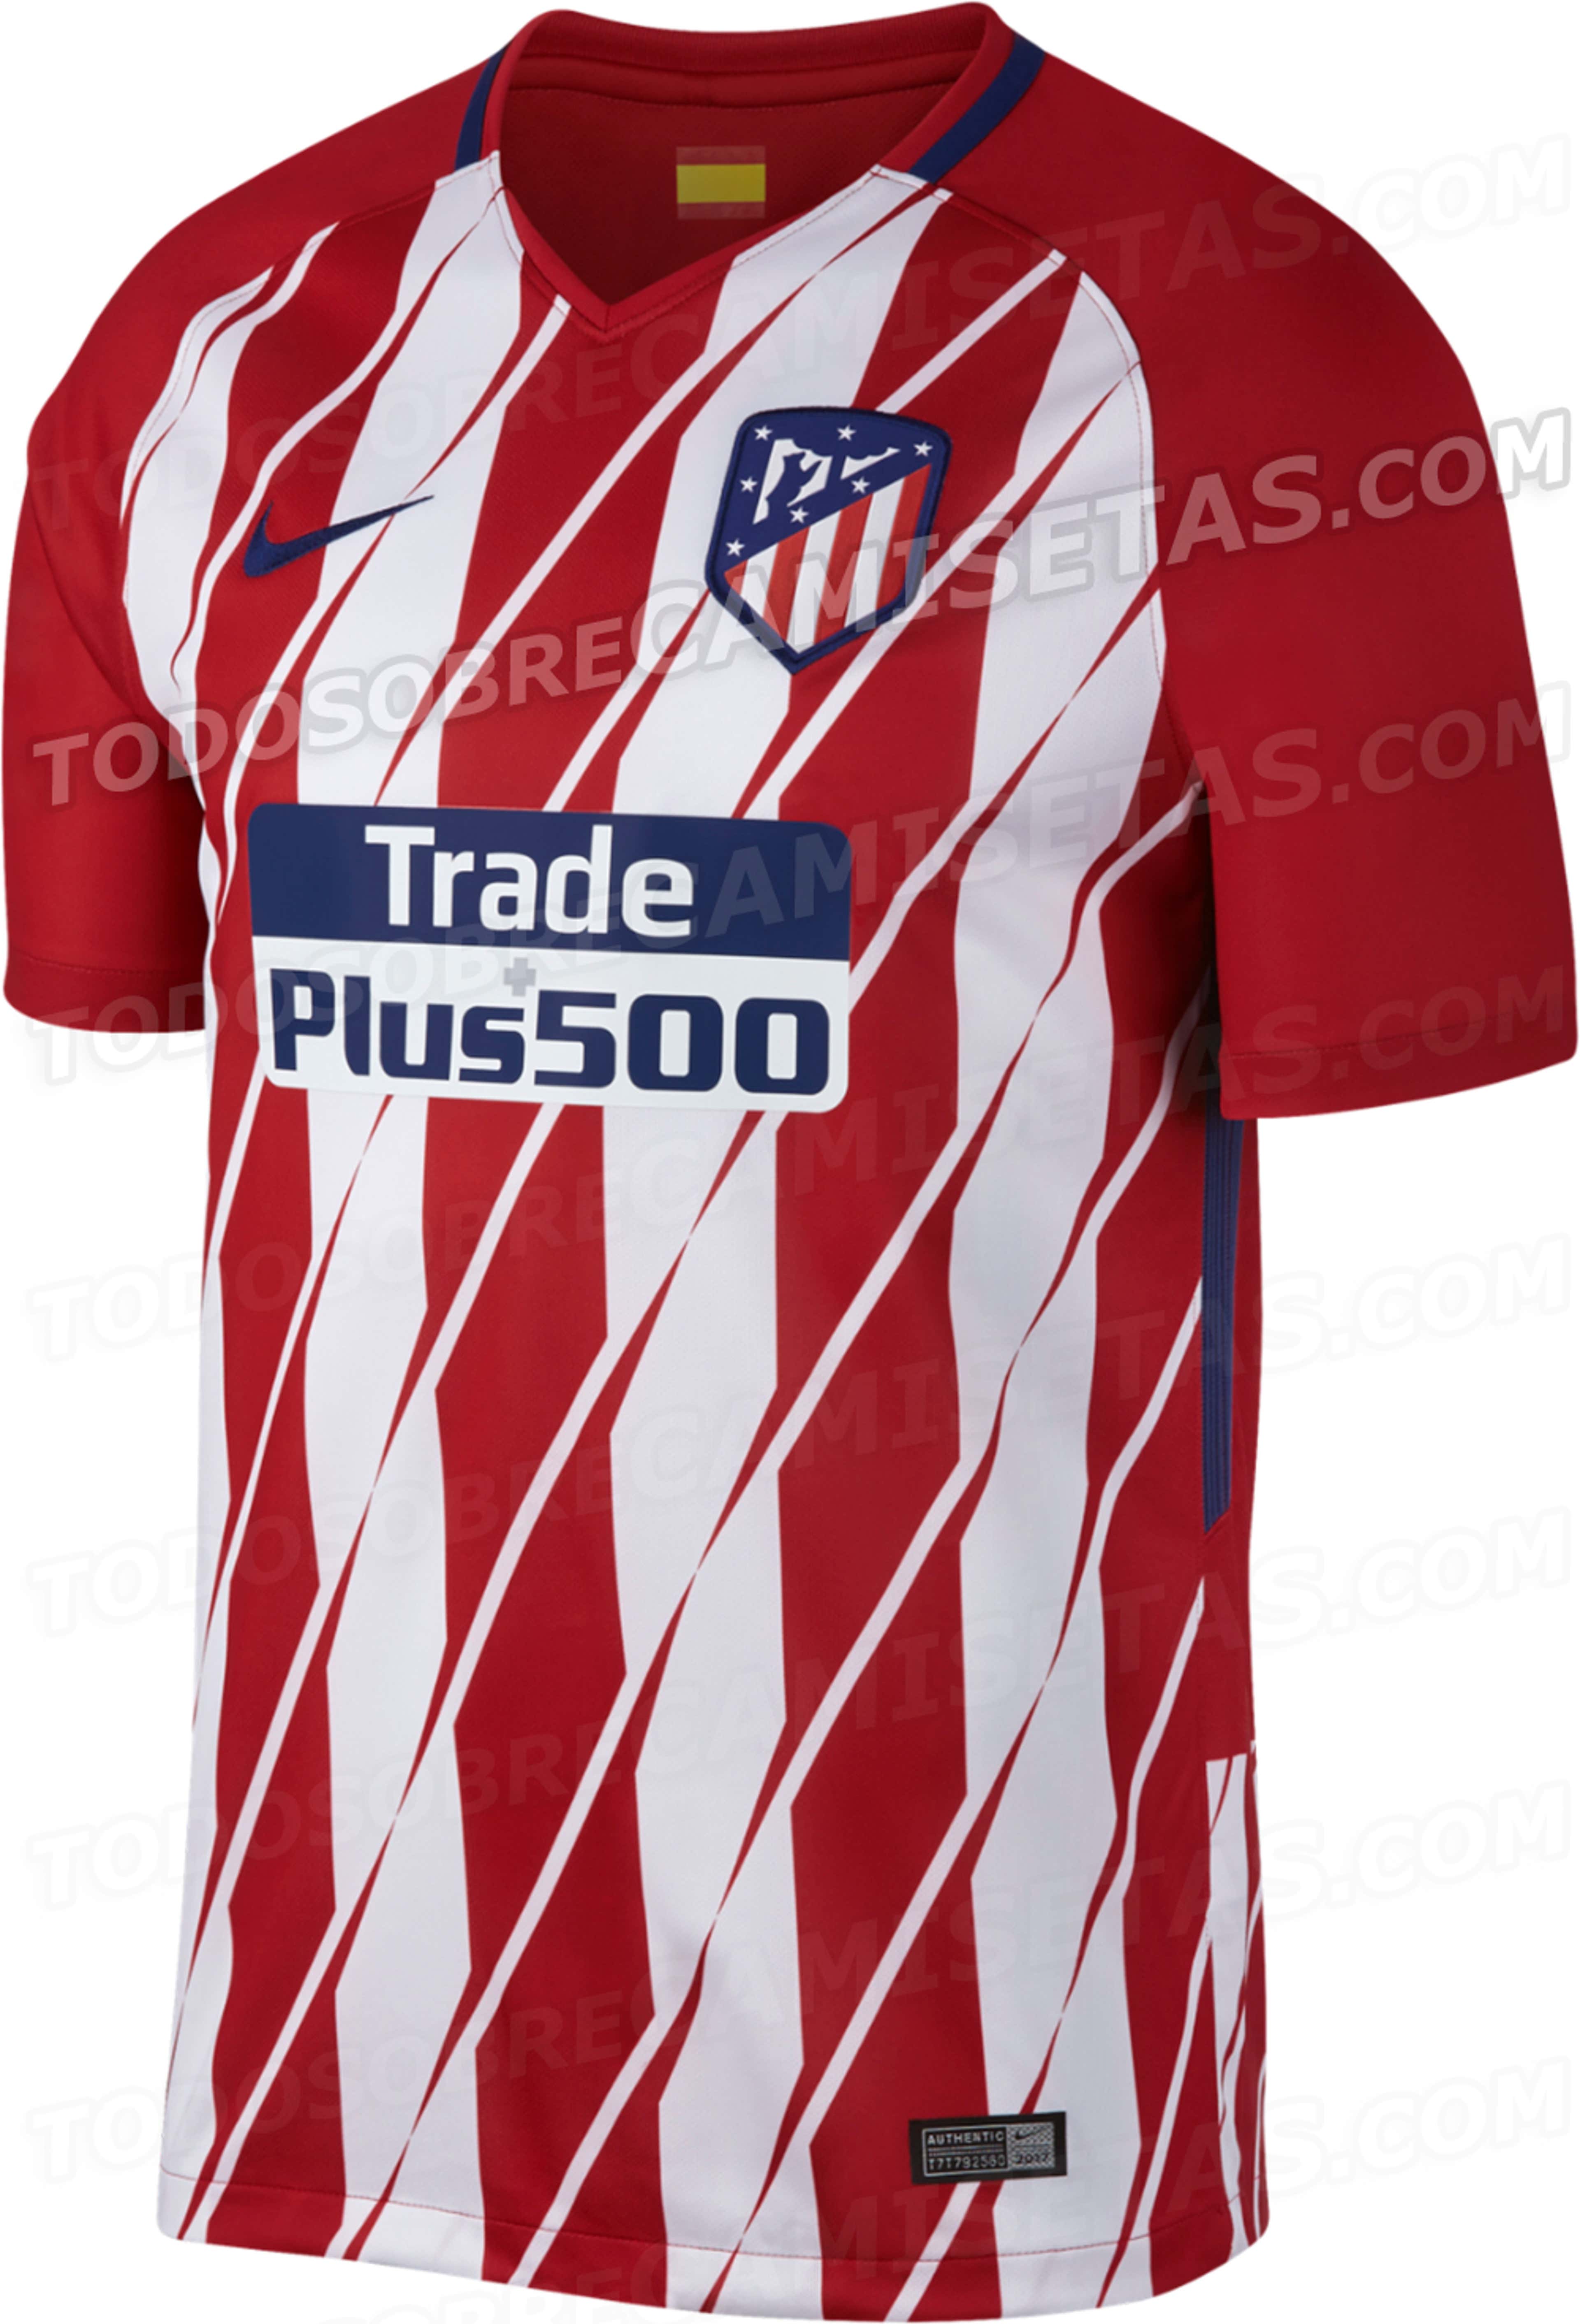 Conoce el nuevo uniforme del Atlético de Madrid y del Mónaco